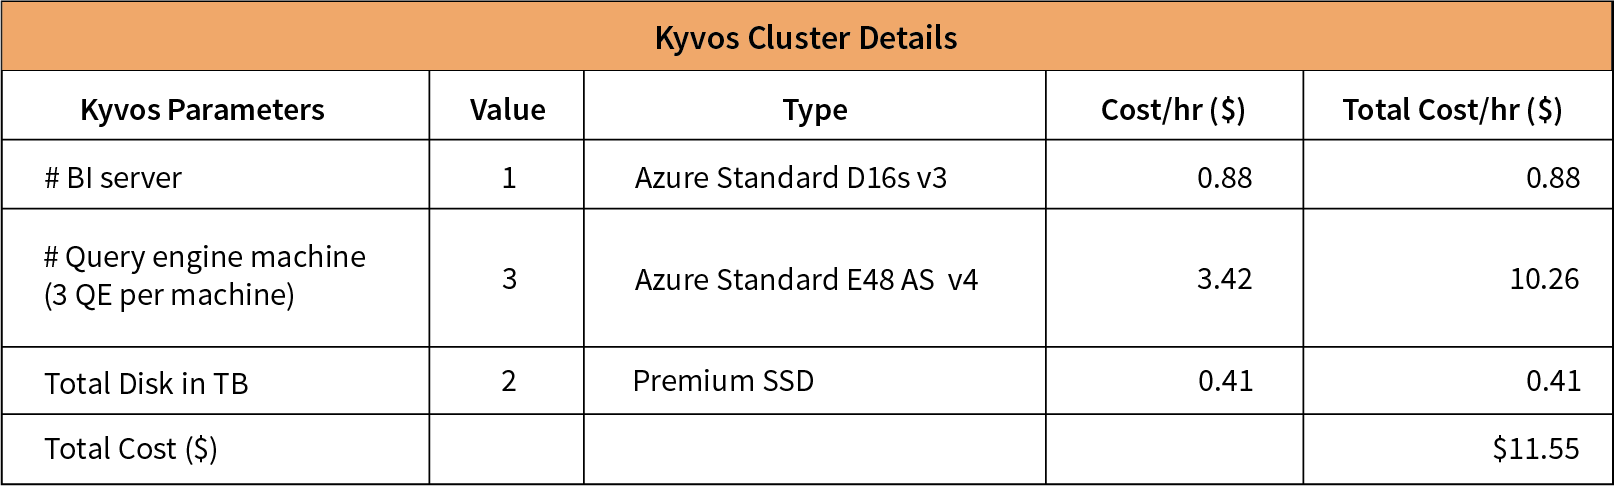 Kyvos-Cluster-Details